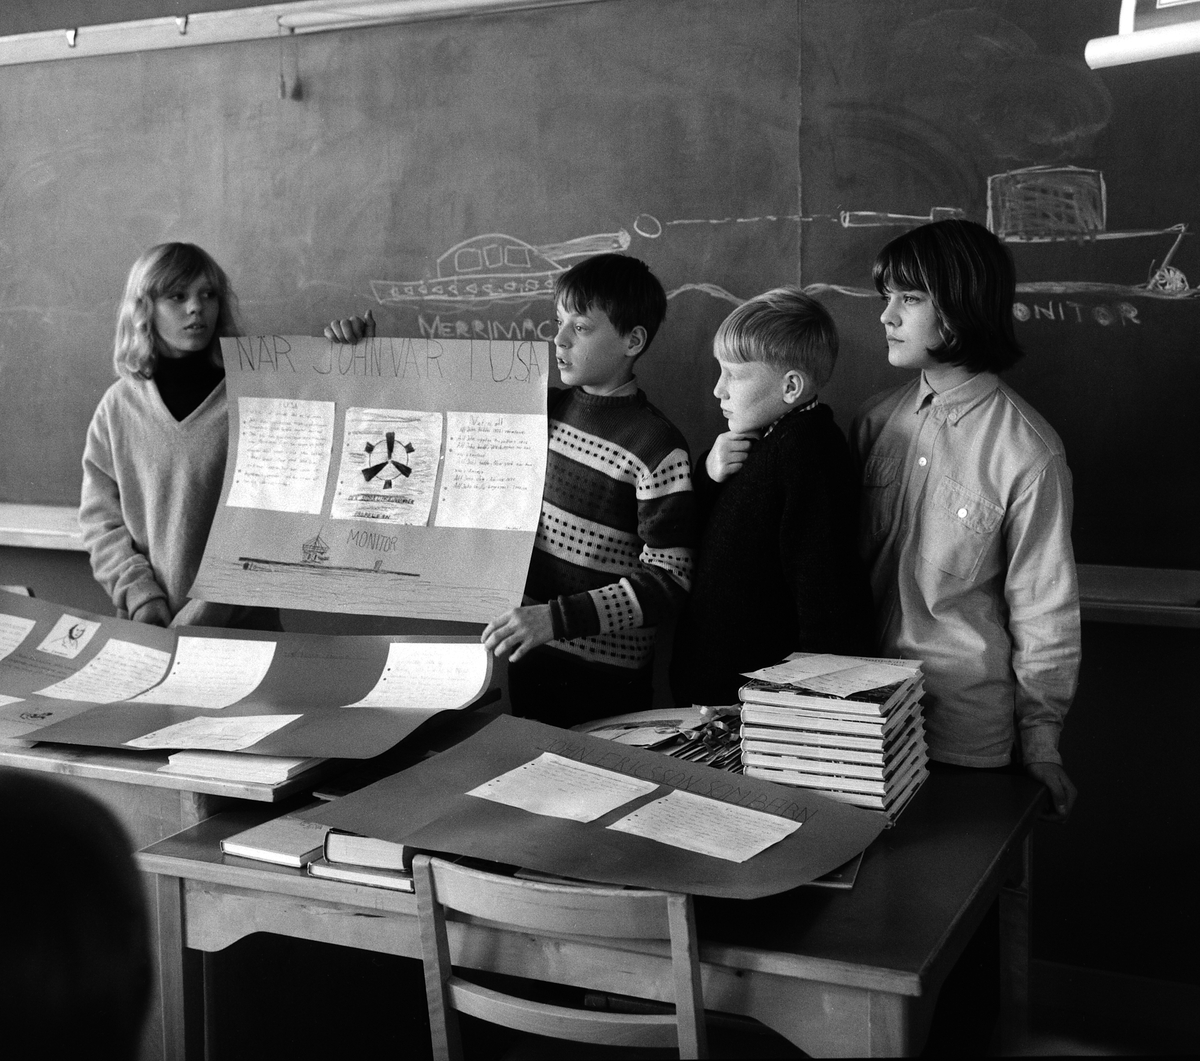 Nya utbildningsmetoder provas vid Tornhagskolan i Linköping. Året var 1965.